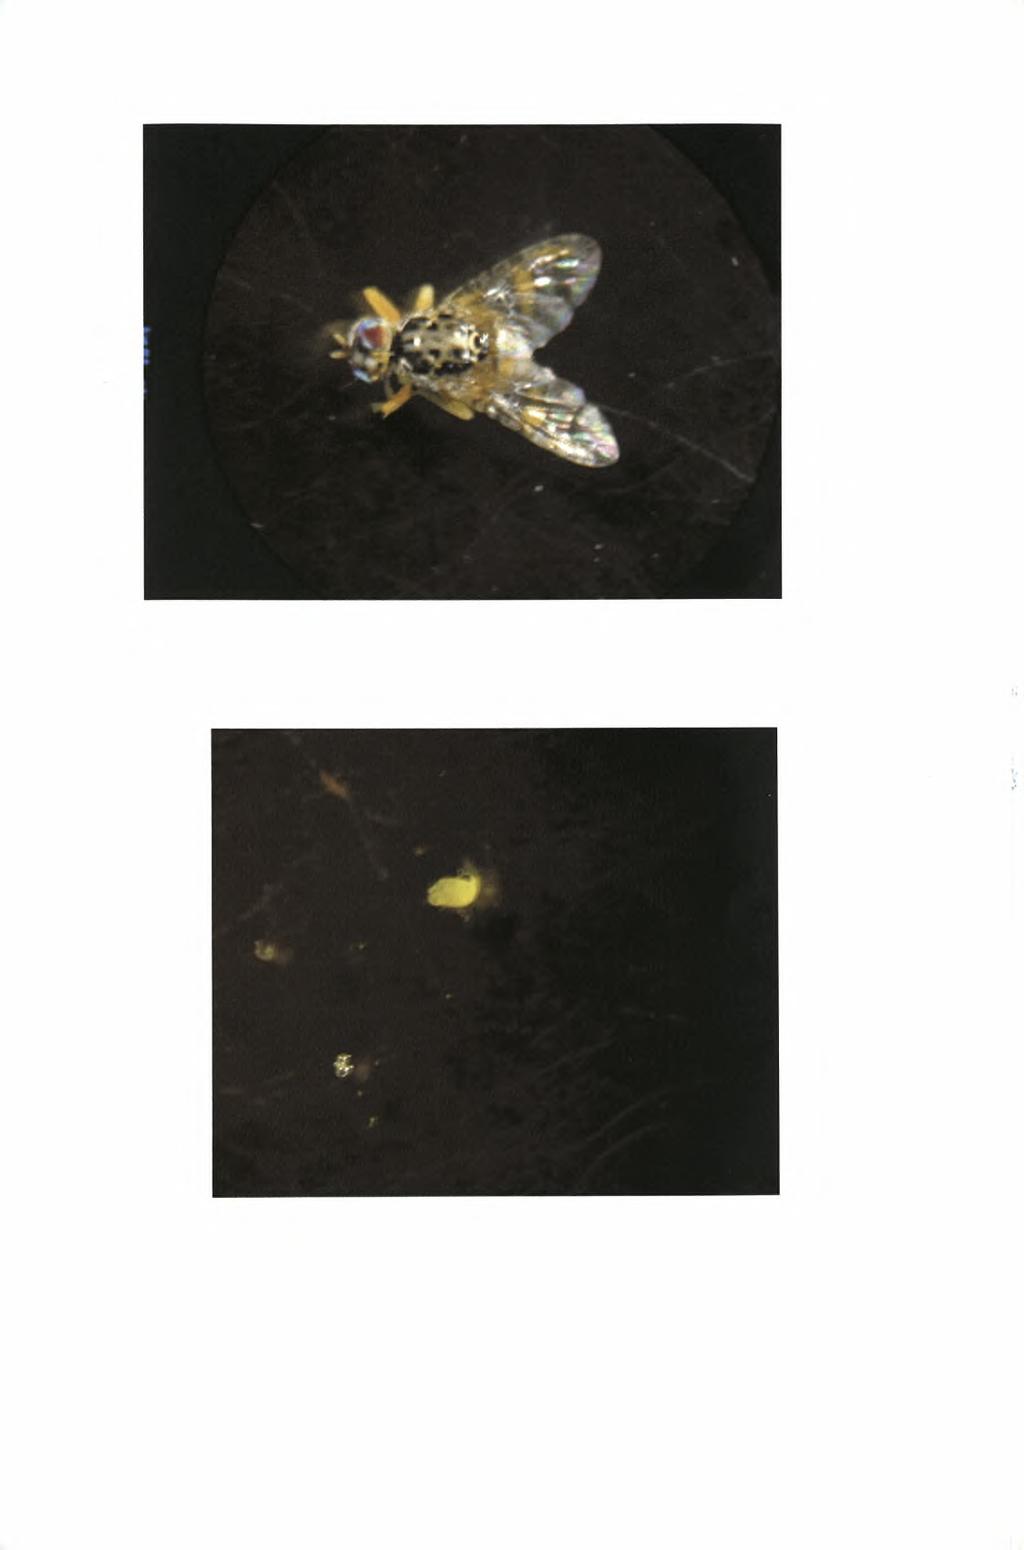 Εικόνα 10: Αρσενικό της μύγας της Μεσογείου σε μεγέθυνση ΙΟχ στο στερεοσκόπιο.